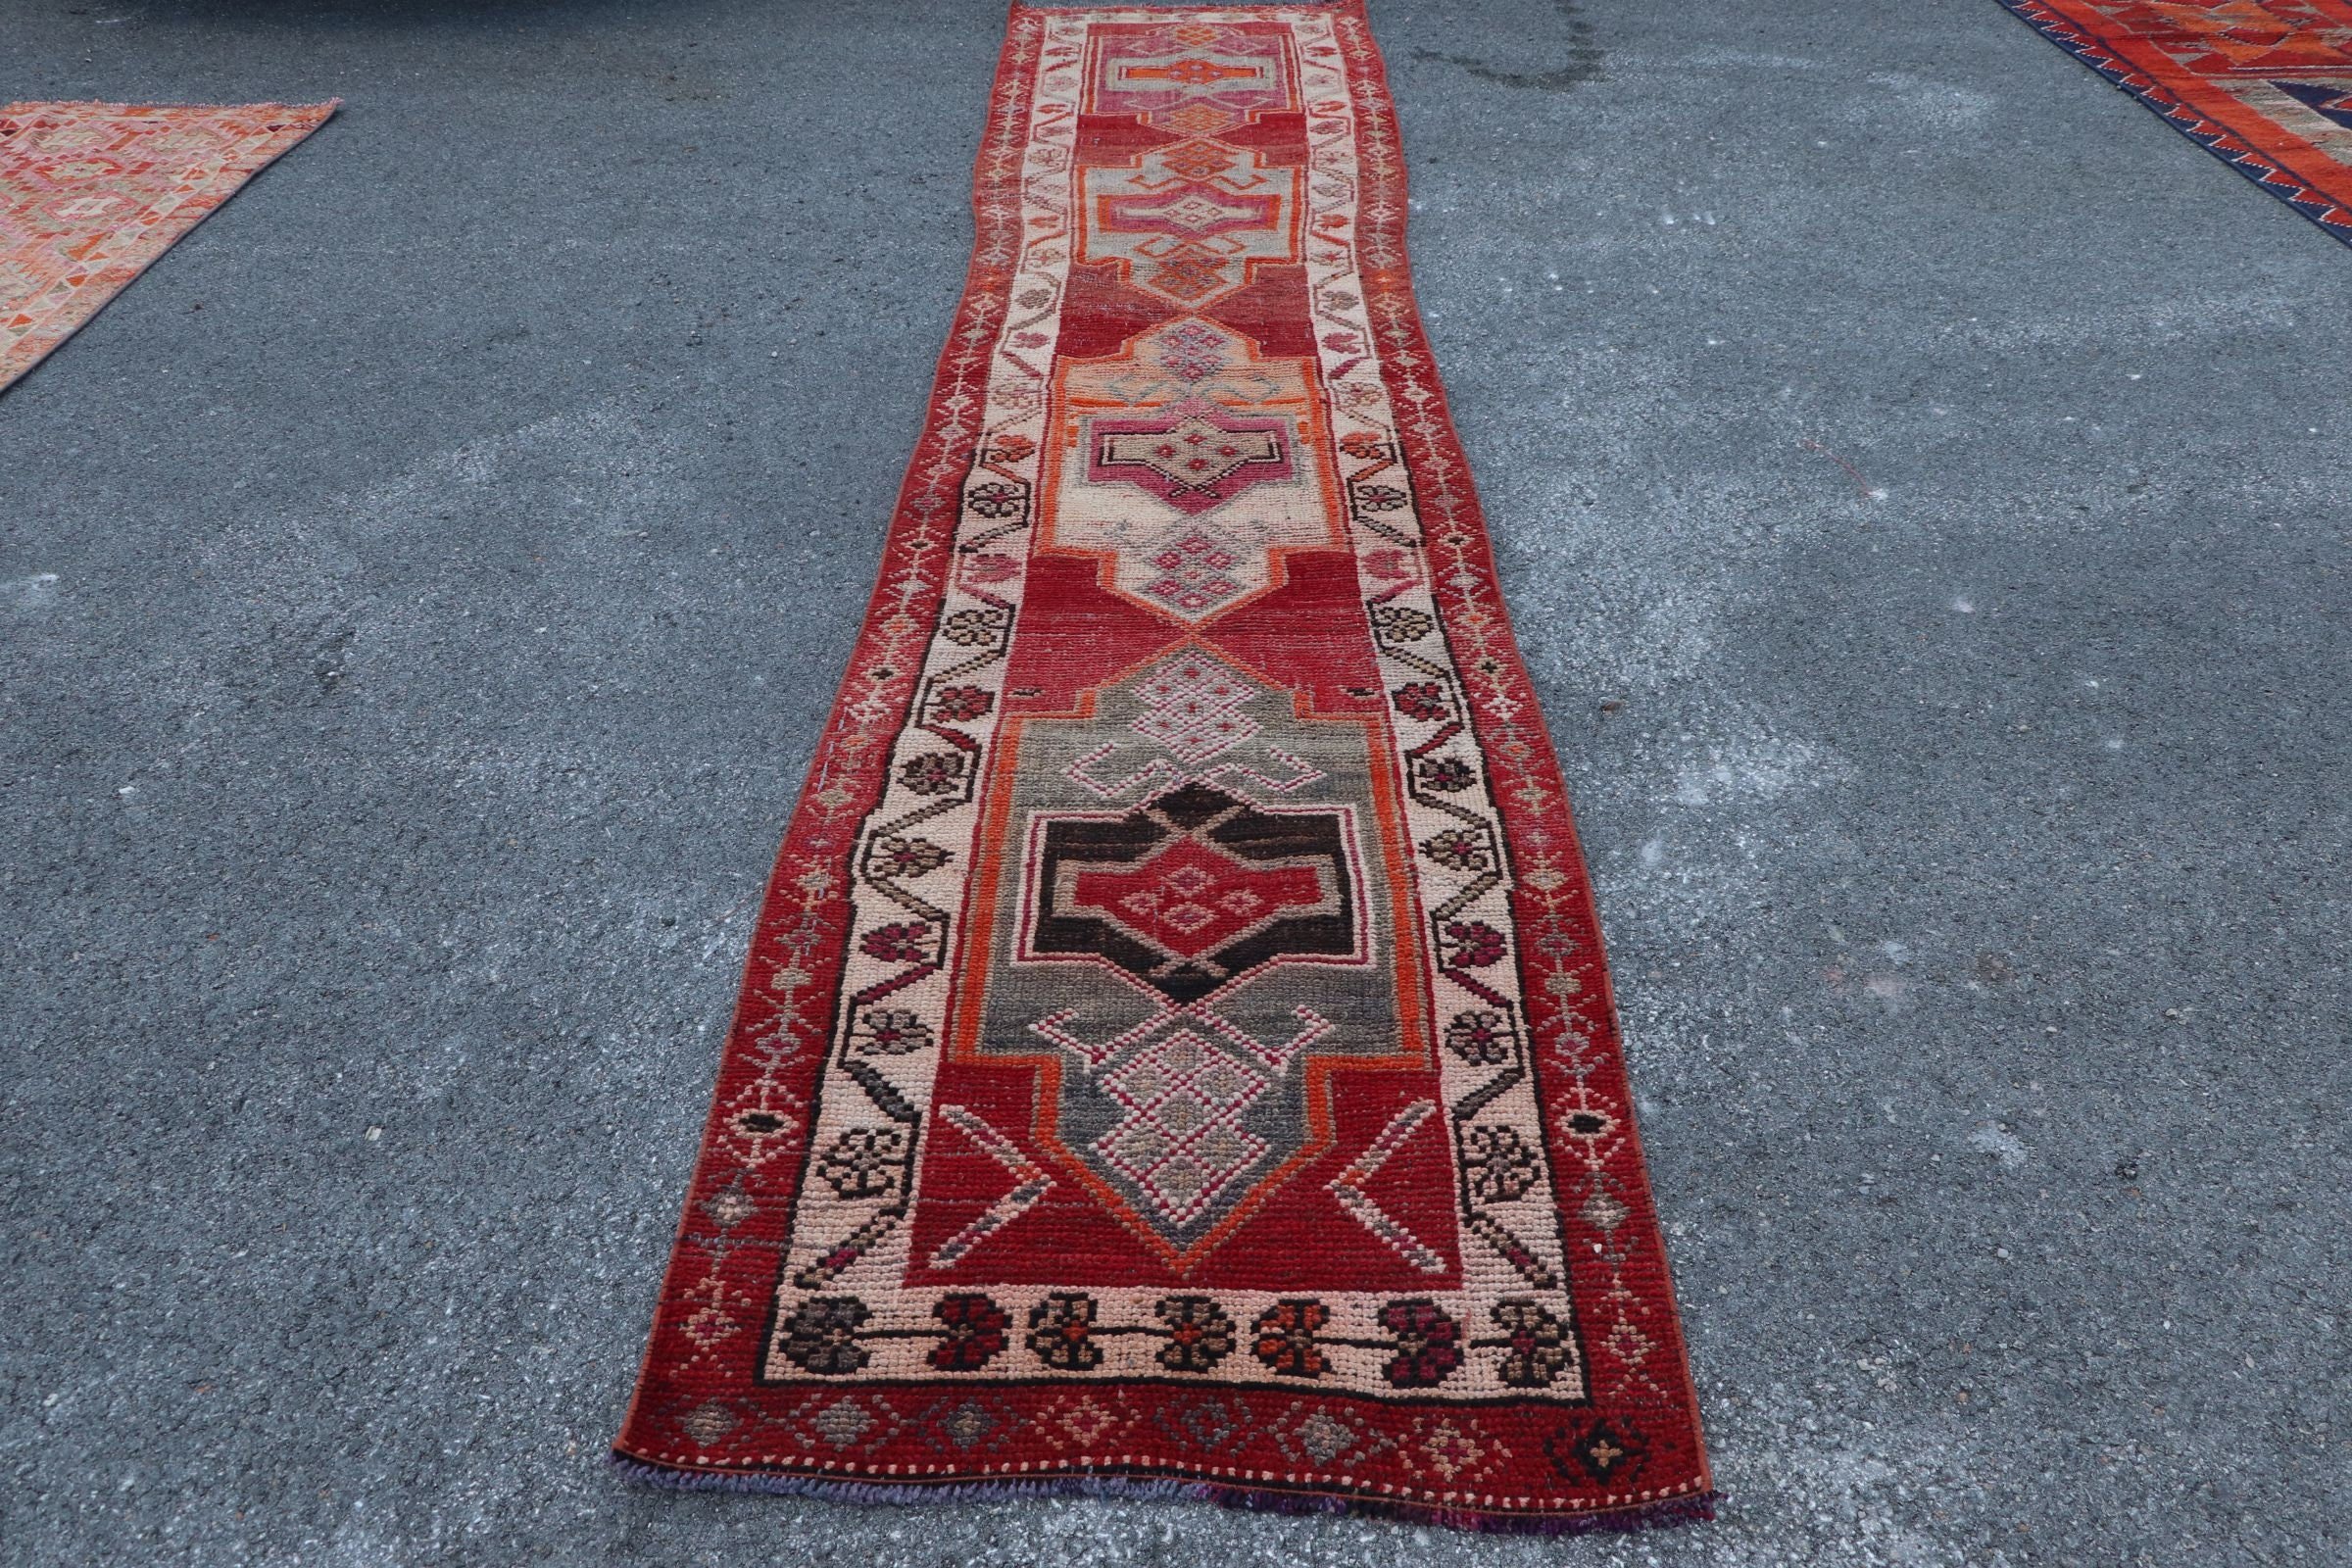 Turkish Rug, 2.7x13.3 ft Runner Rugs, Vintage Rug, Art Rug, Rugs for Runner, Red Bedroom Rugs, Wool Rug, Outdoor Rug, Cool Rugs, Stair Rugs